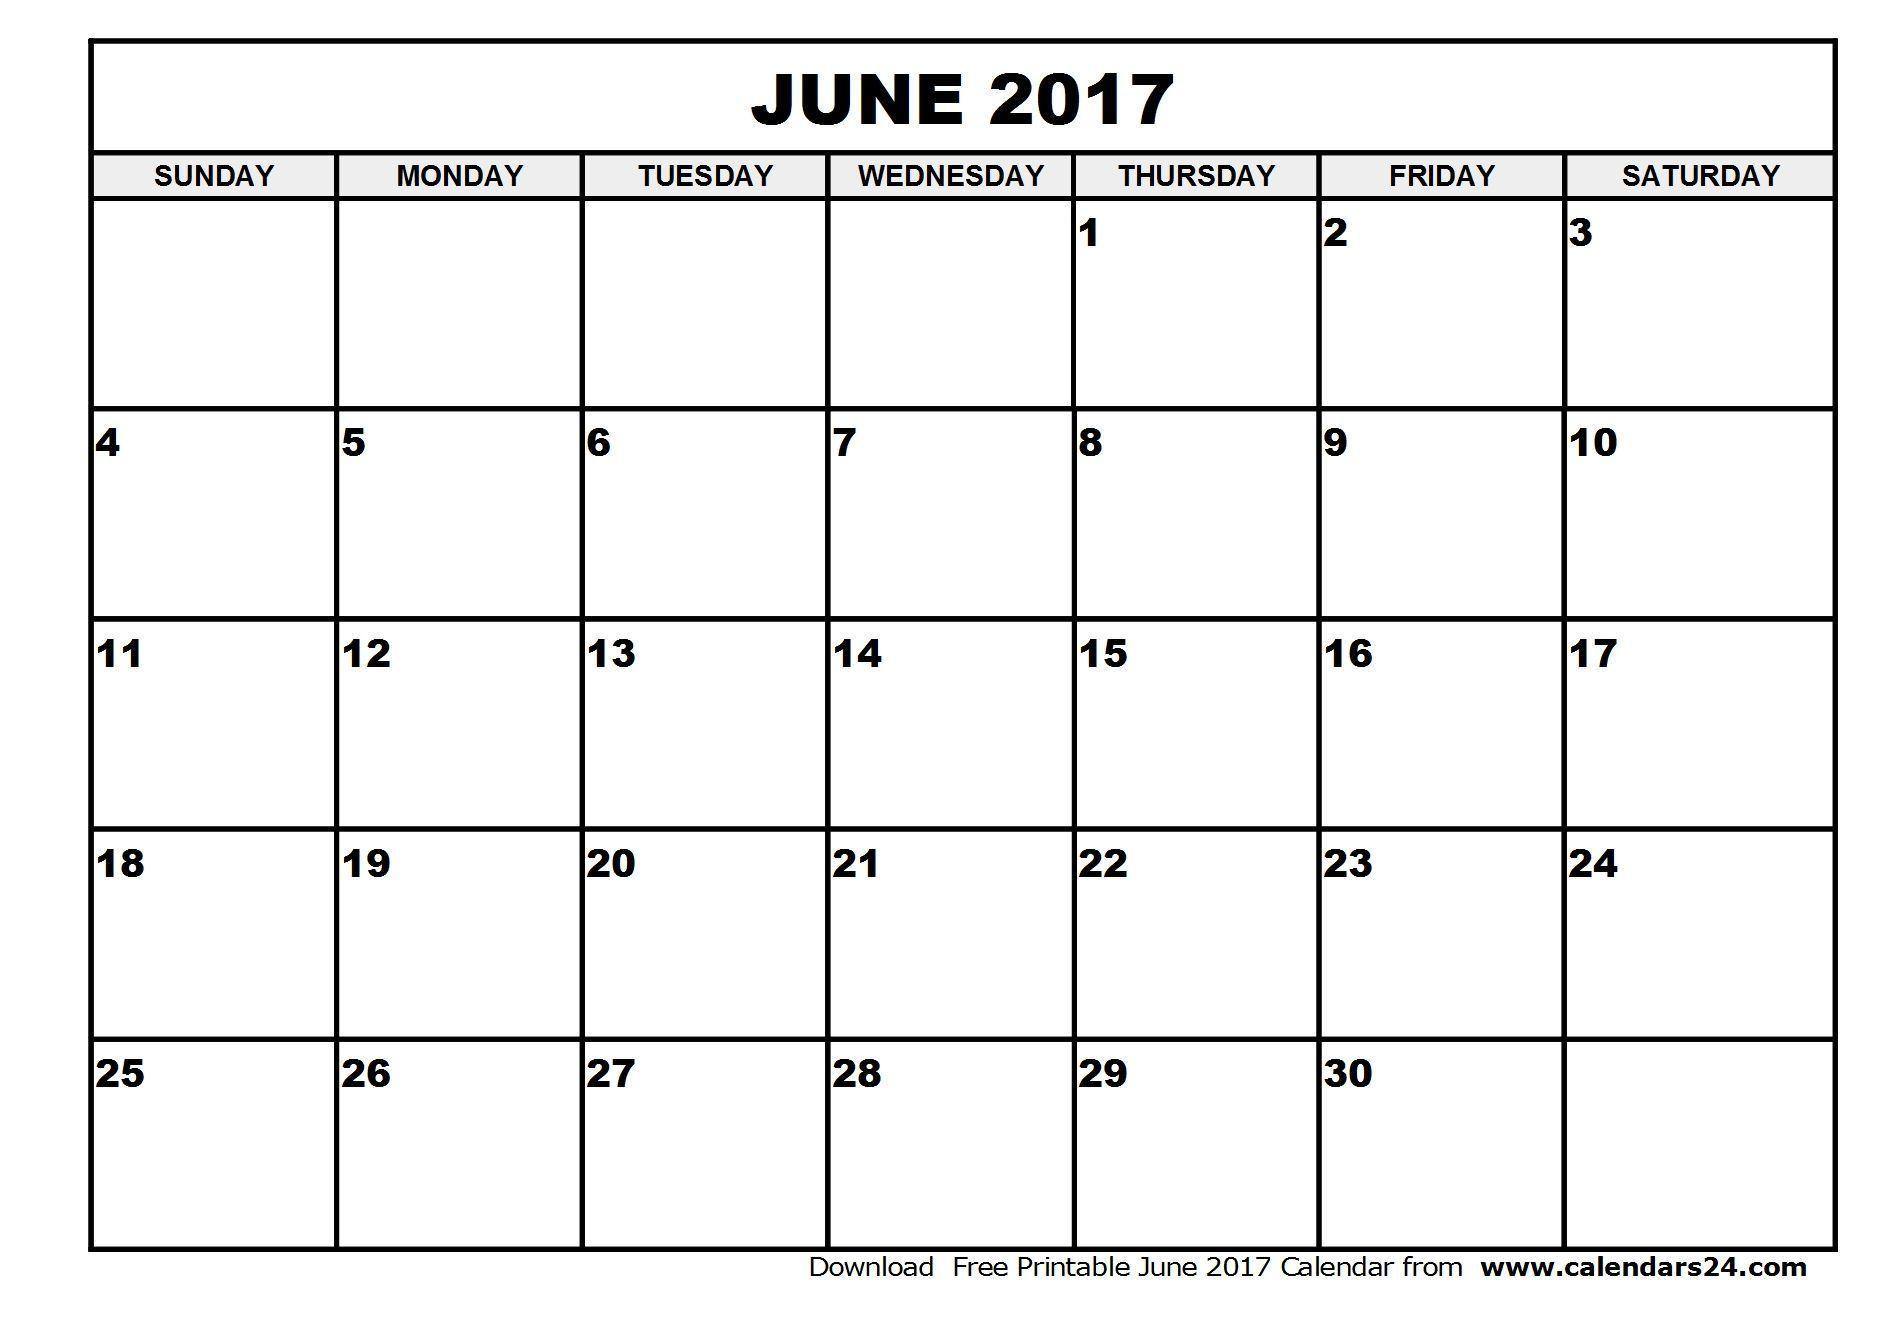 June 2017 Calendar & July 2017 Calendar